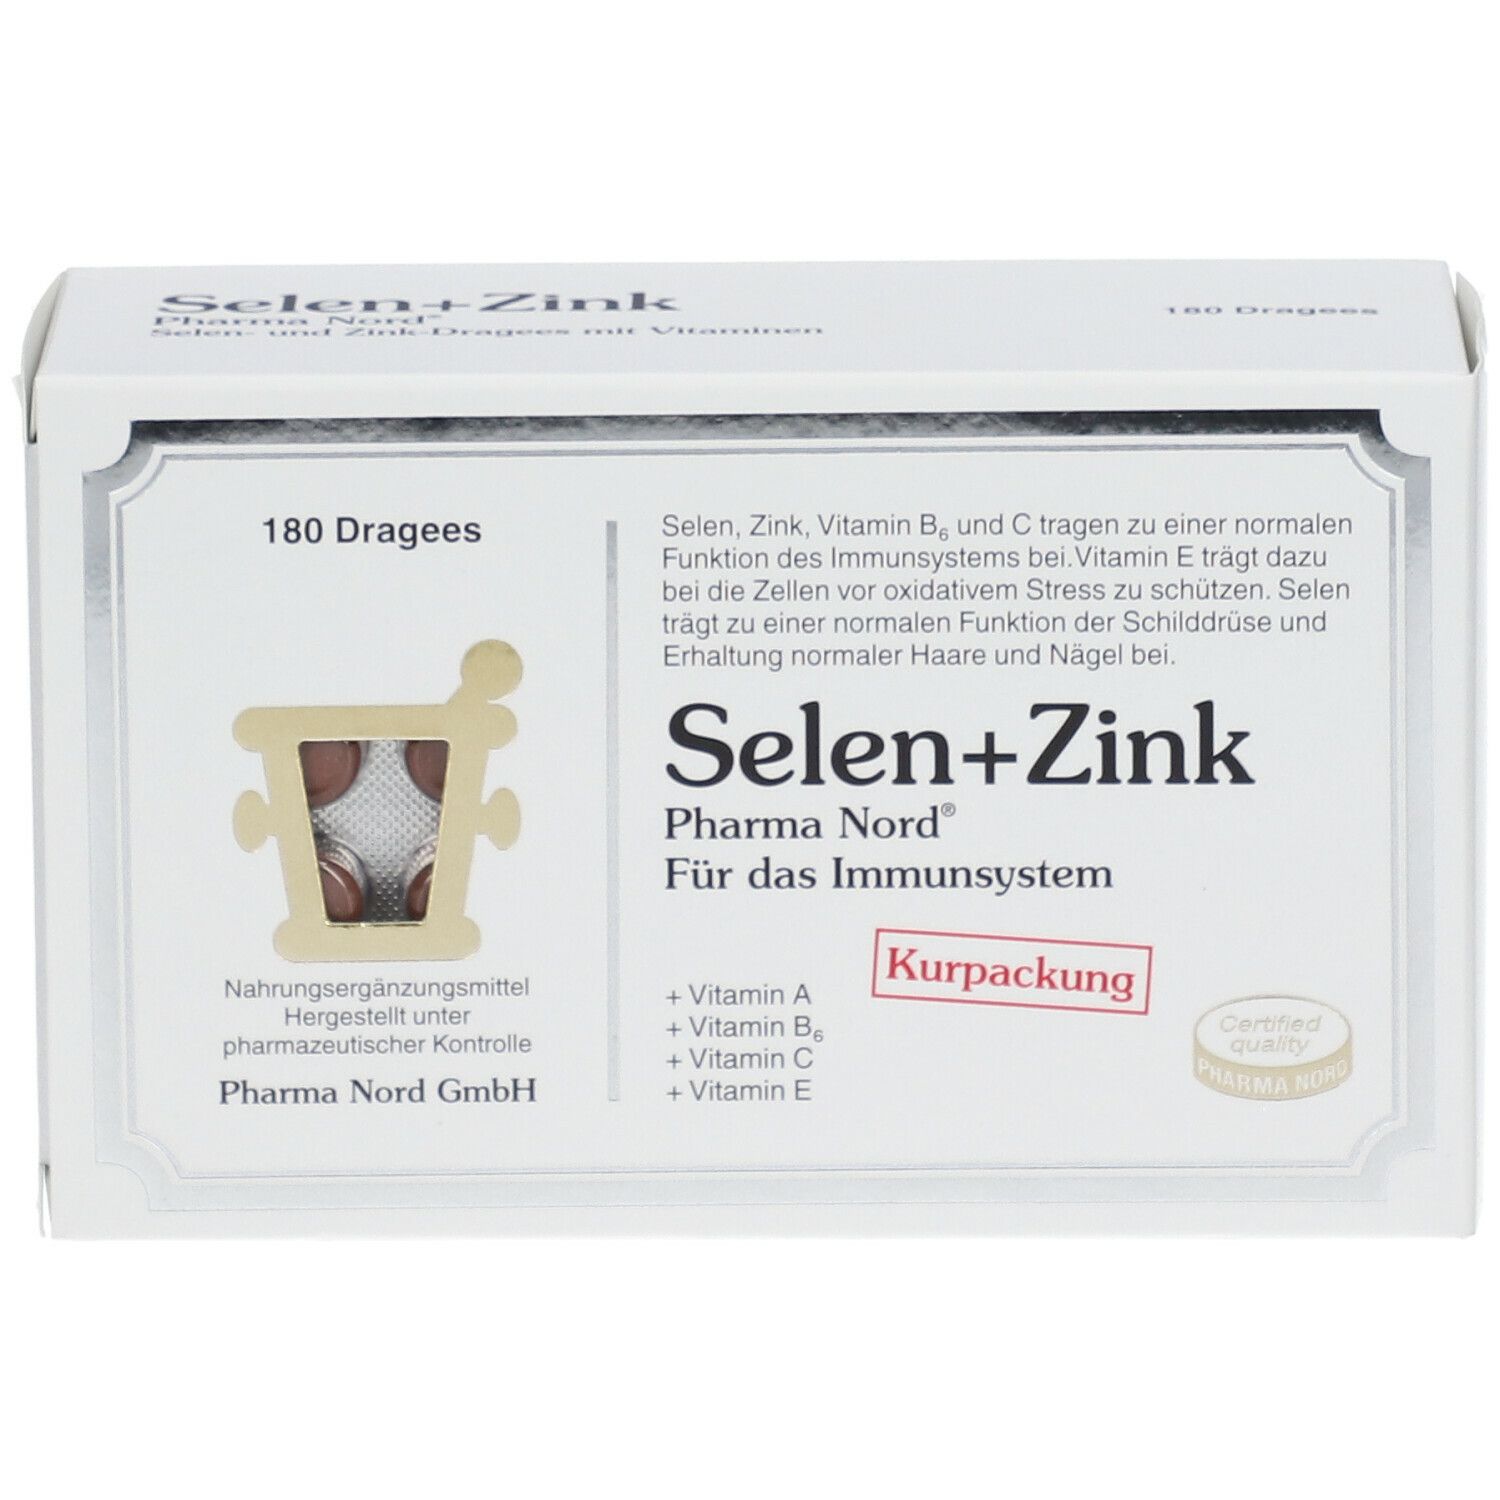 Selen+Zink Pharma Nord®